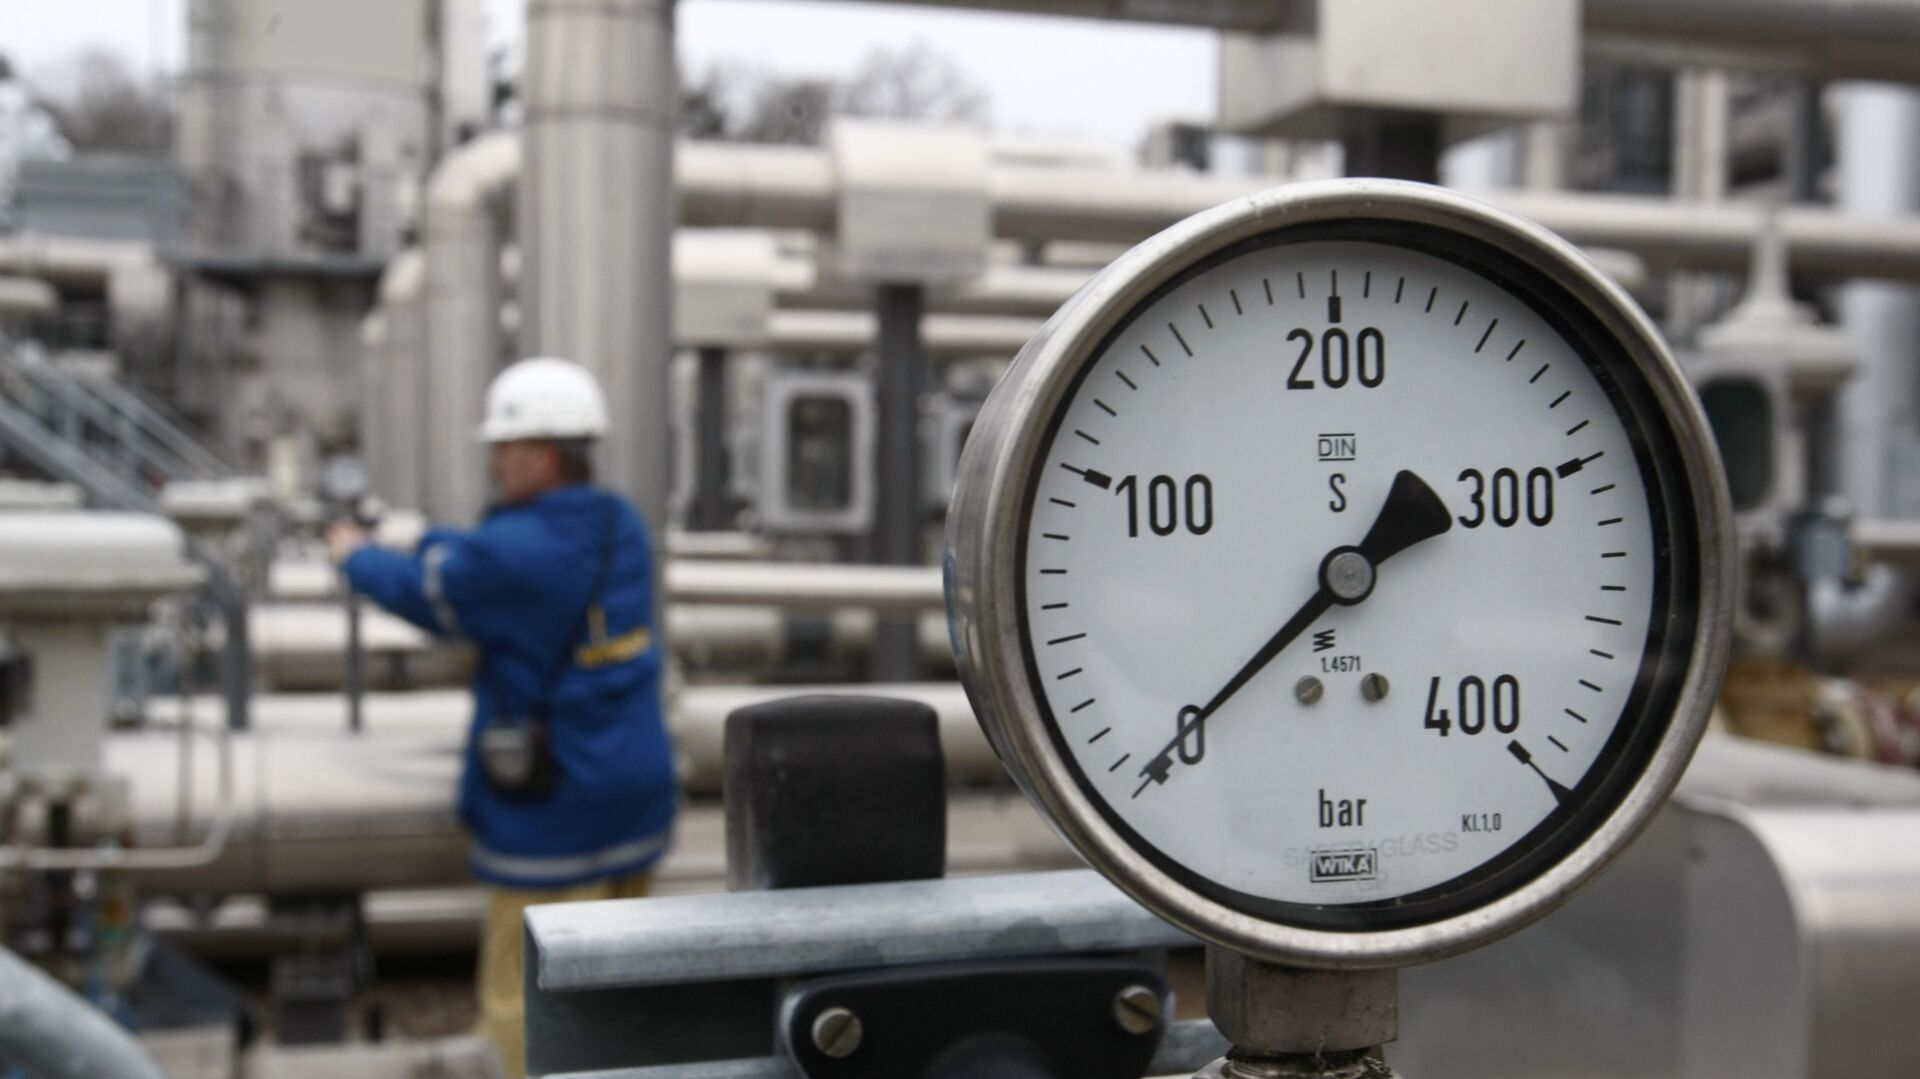 В Кремле назвали требования большей прокачки газа через Украину пропагандой